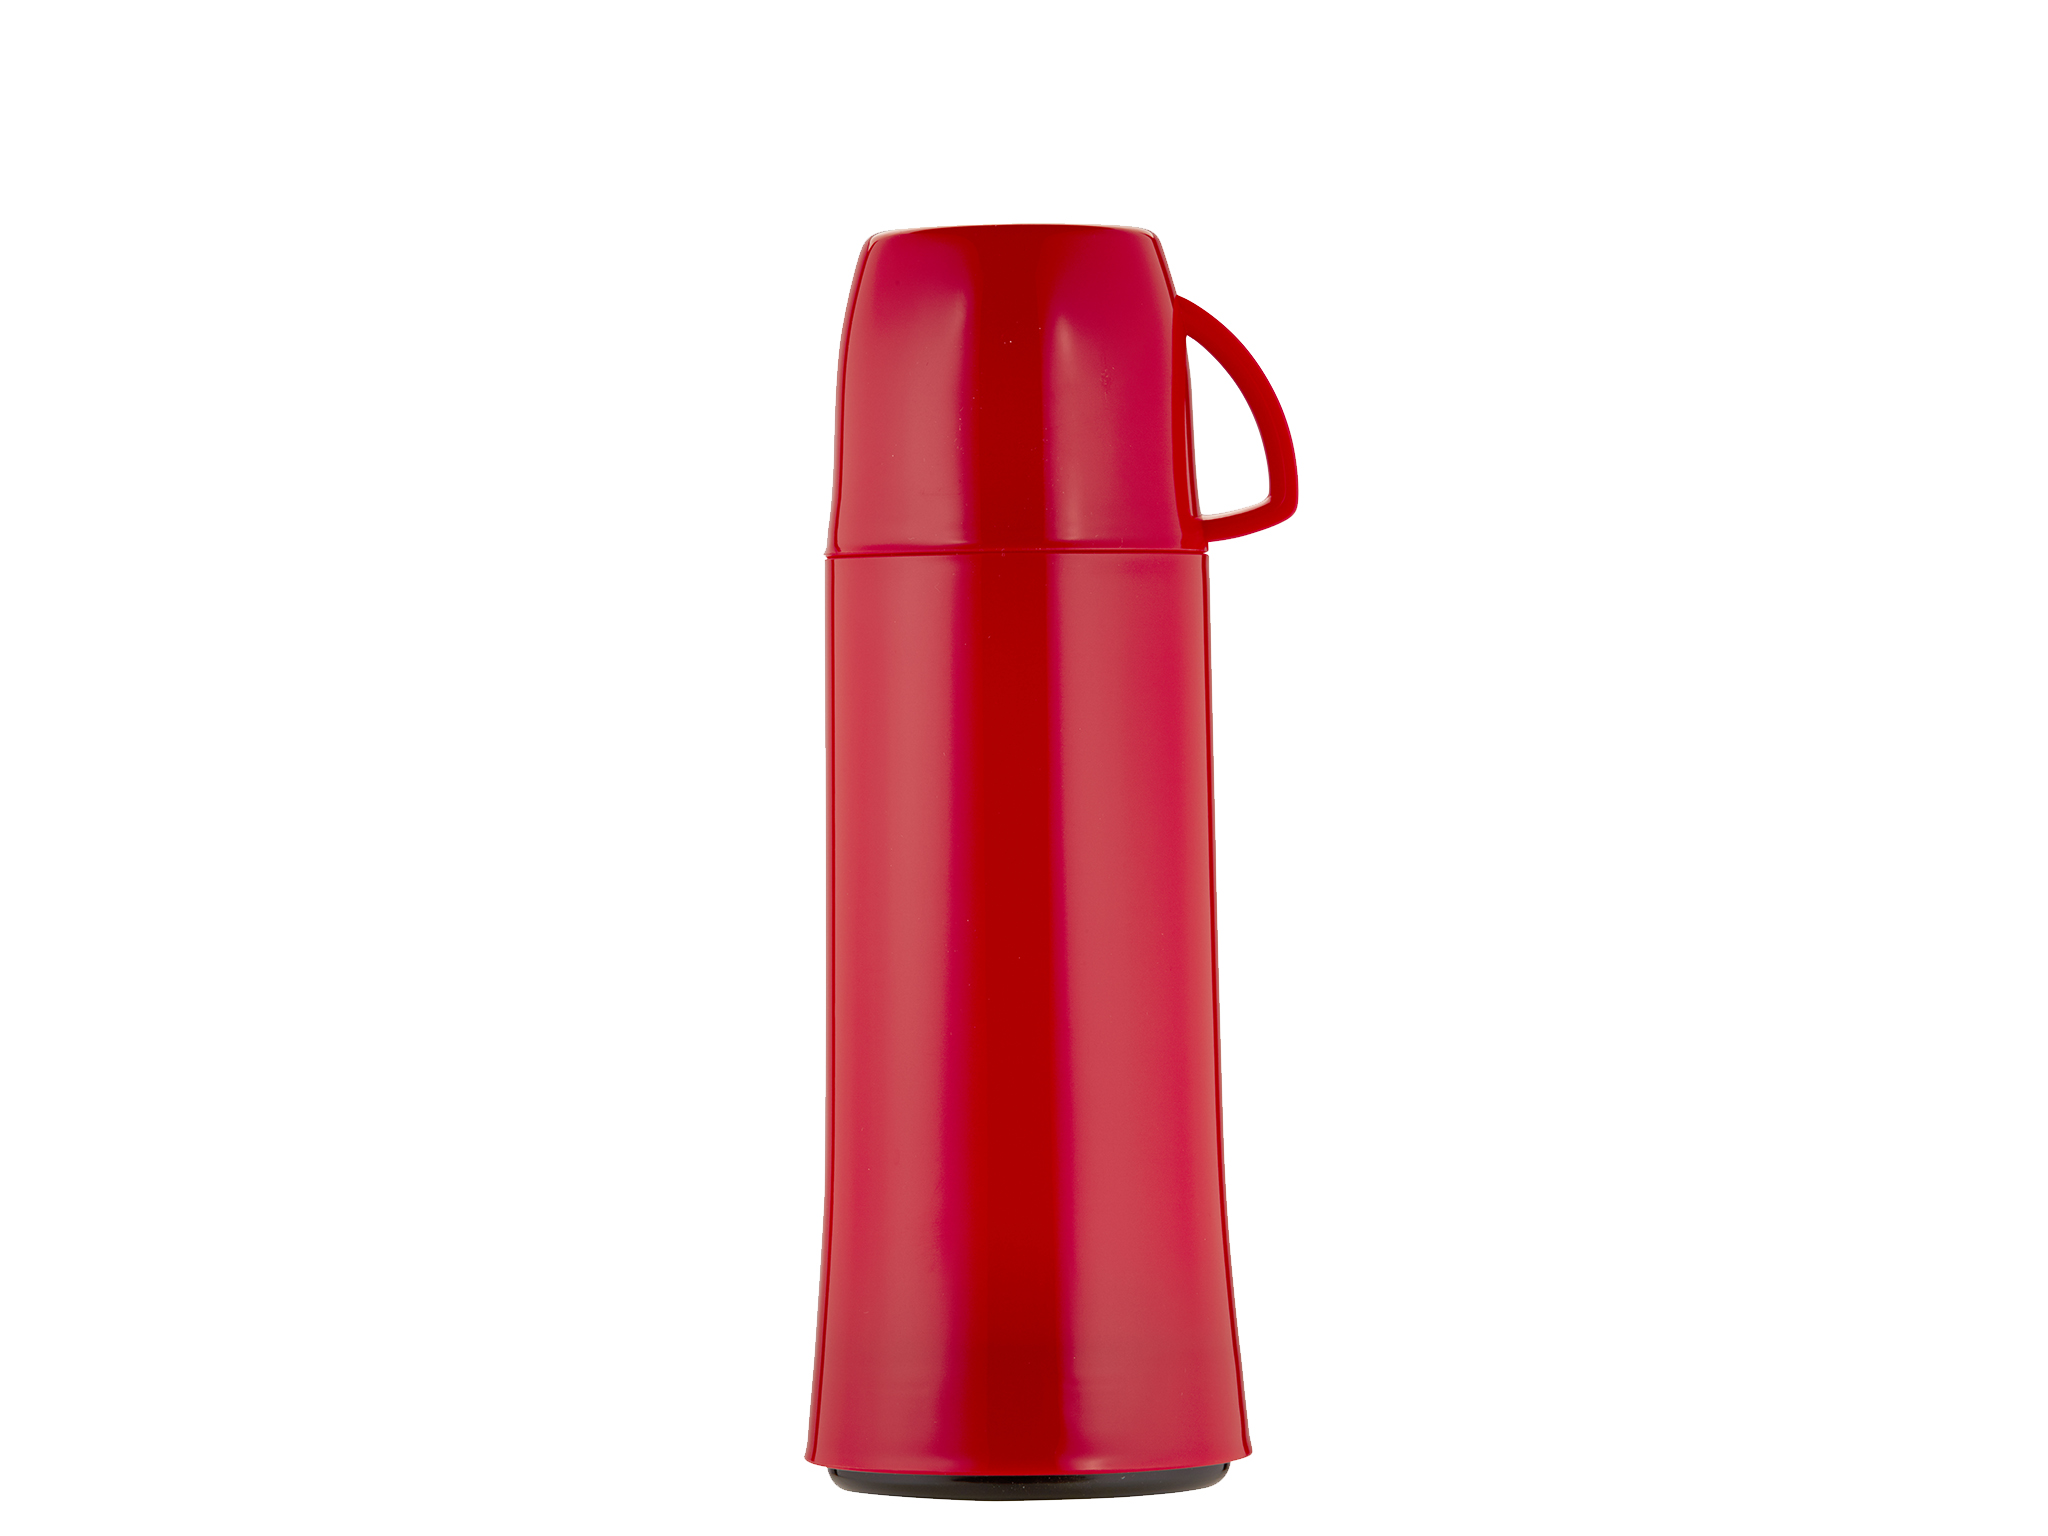 5443-011 - Vacuum flask red 0.75 L ELEGANCE - Helios